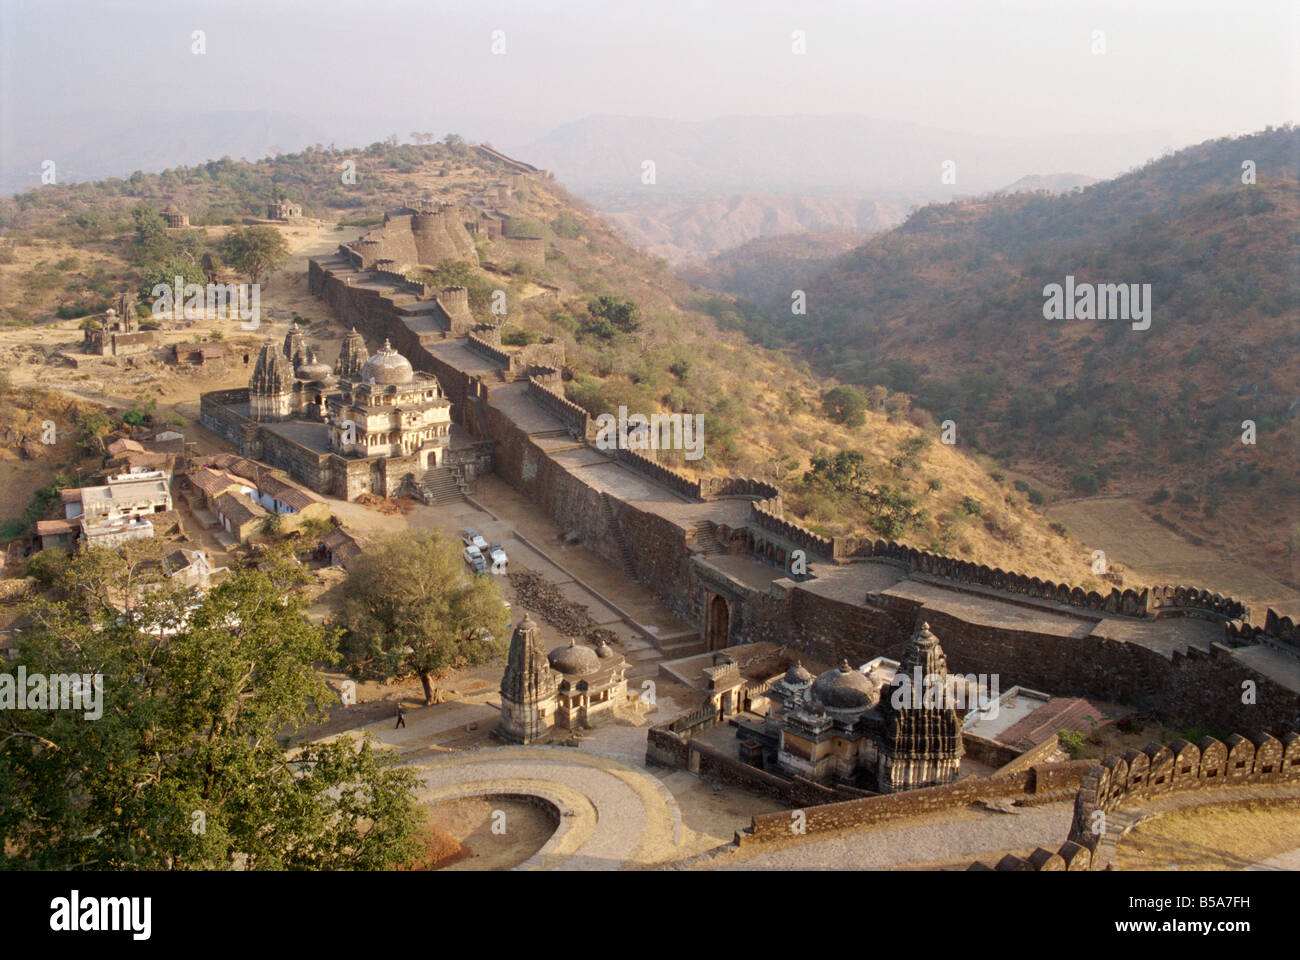 Massive fort built in 1458 AD by Rana Kumbha Kumbhalgarh Rajasthan state India Asia Stock Photo